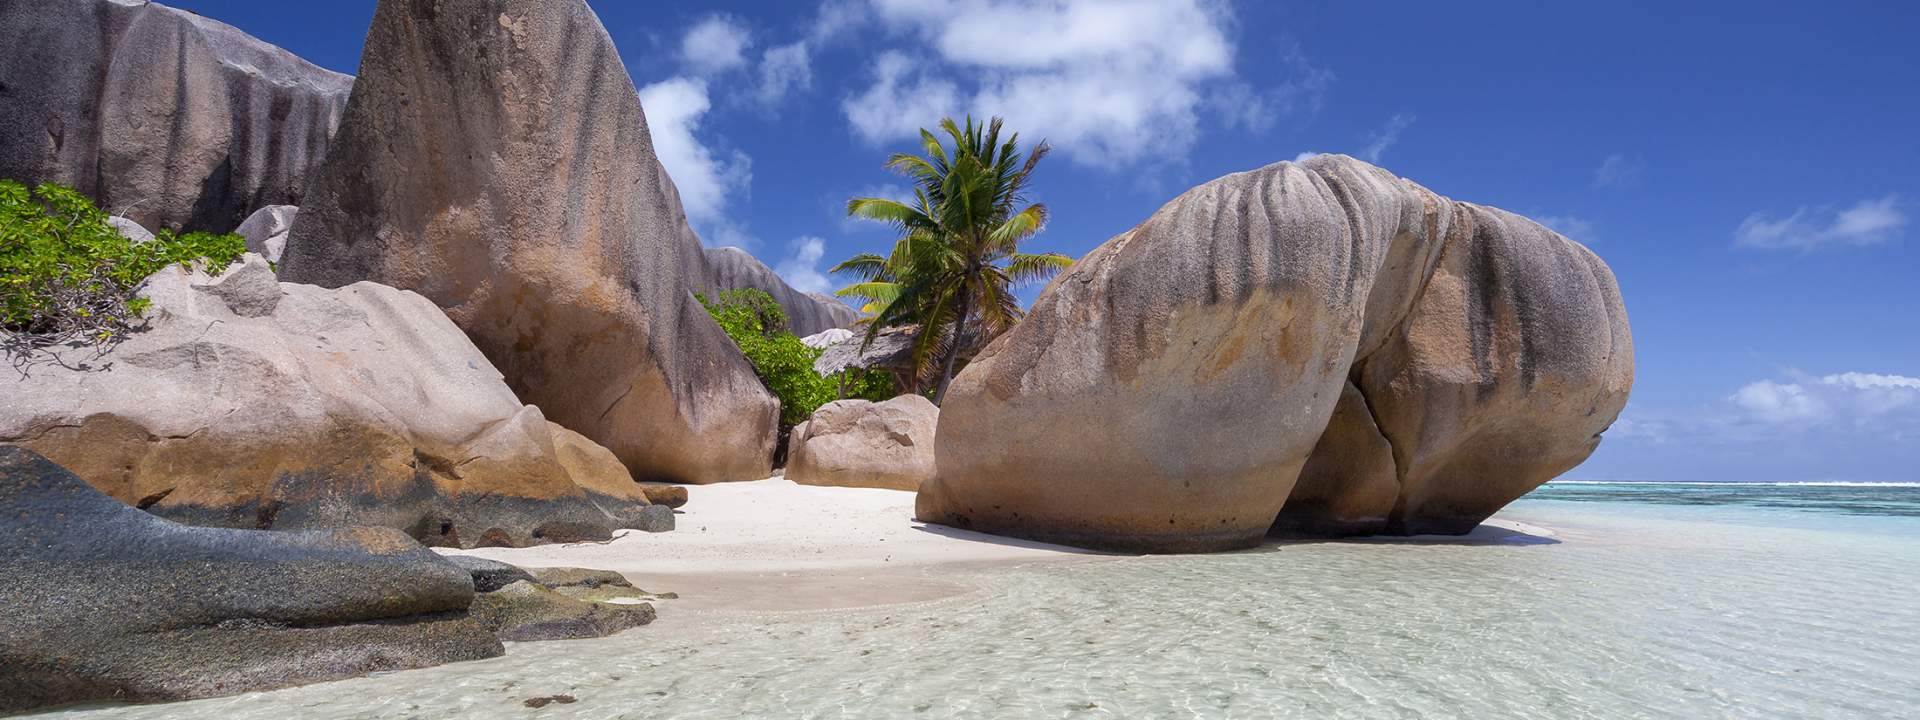 Crociera alla cabina per due: le Seychelles in goletta